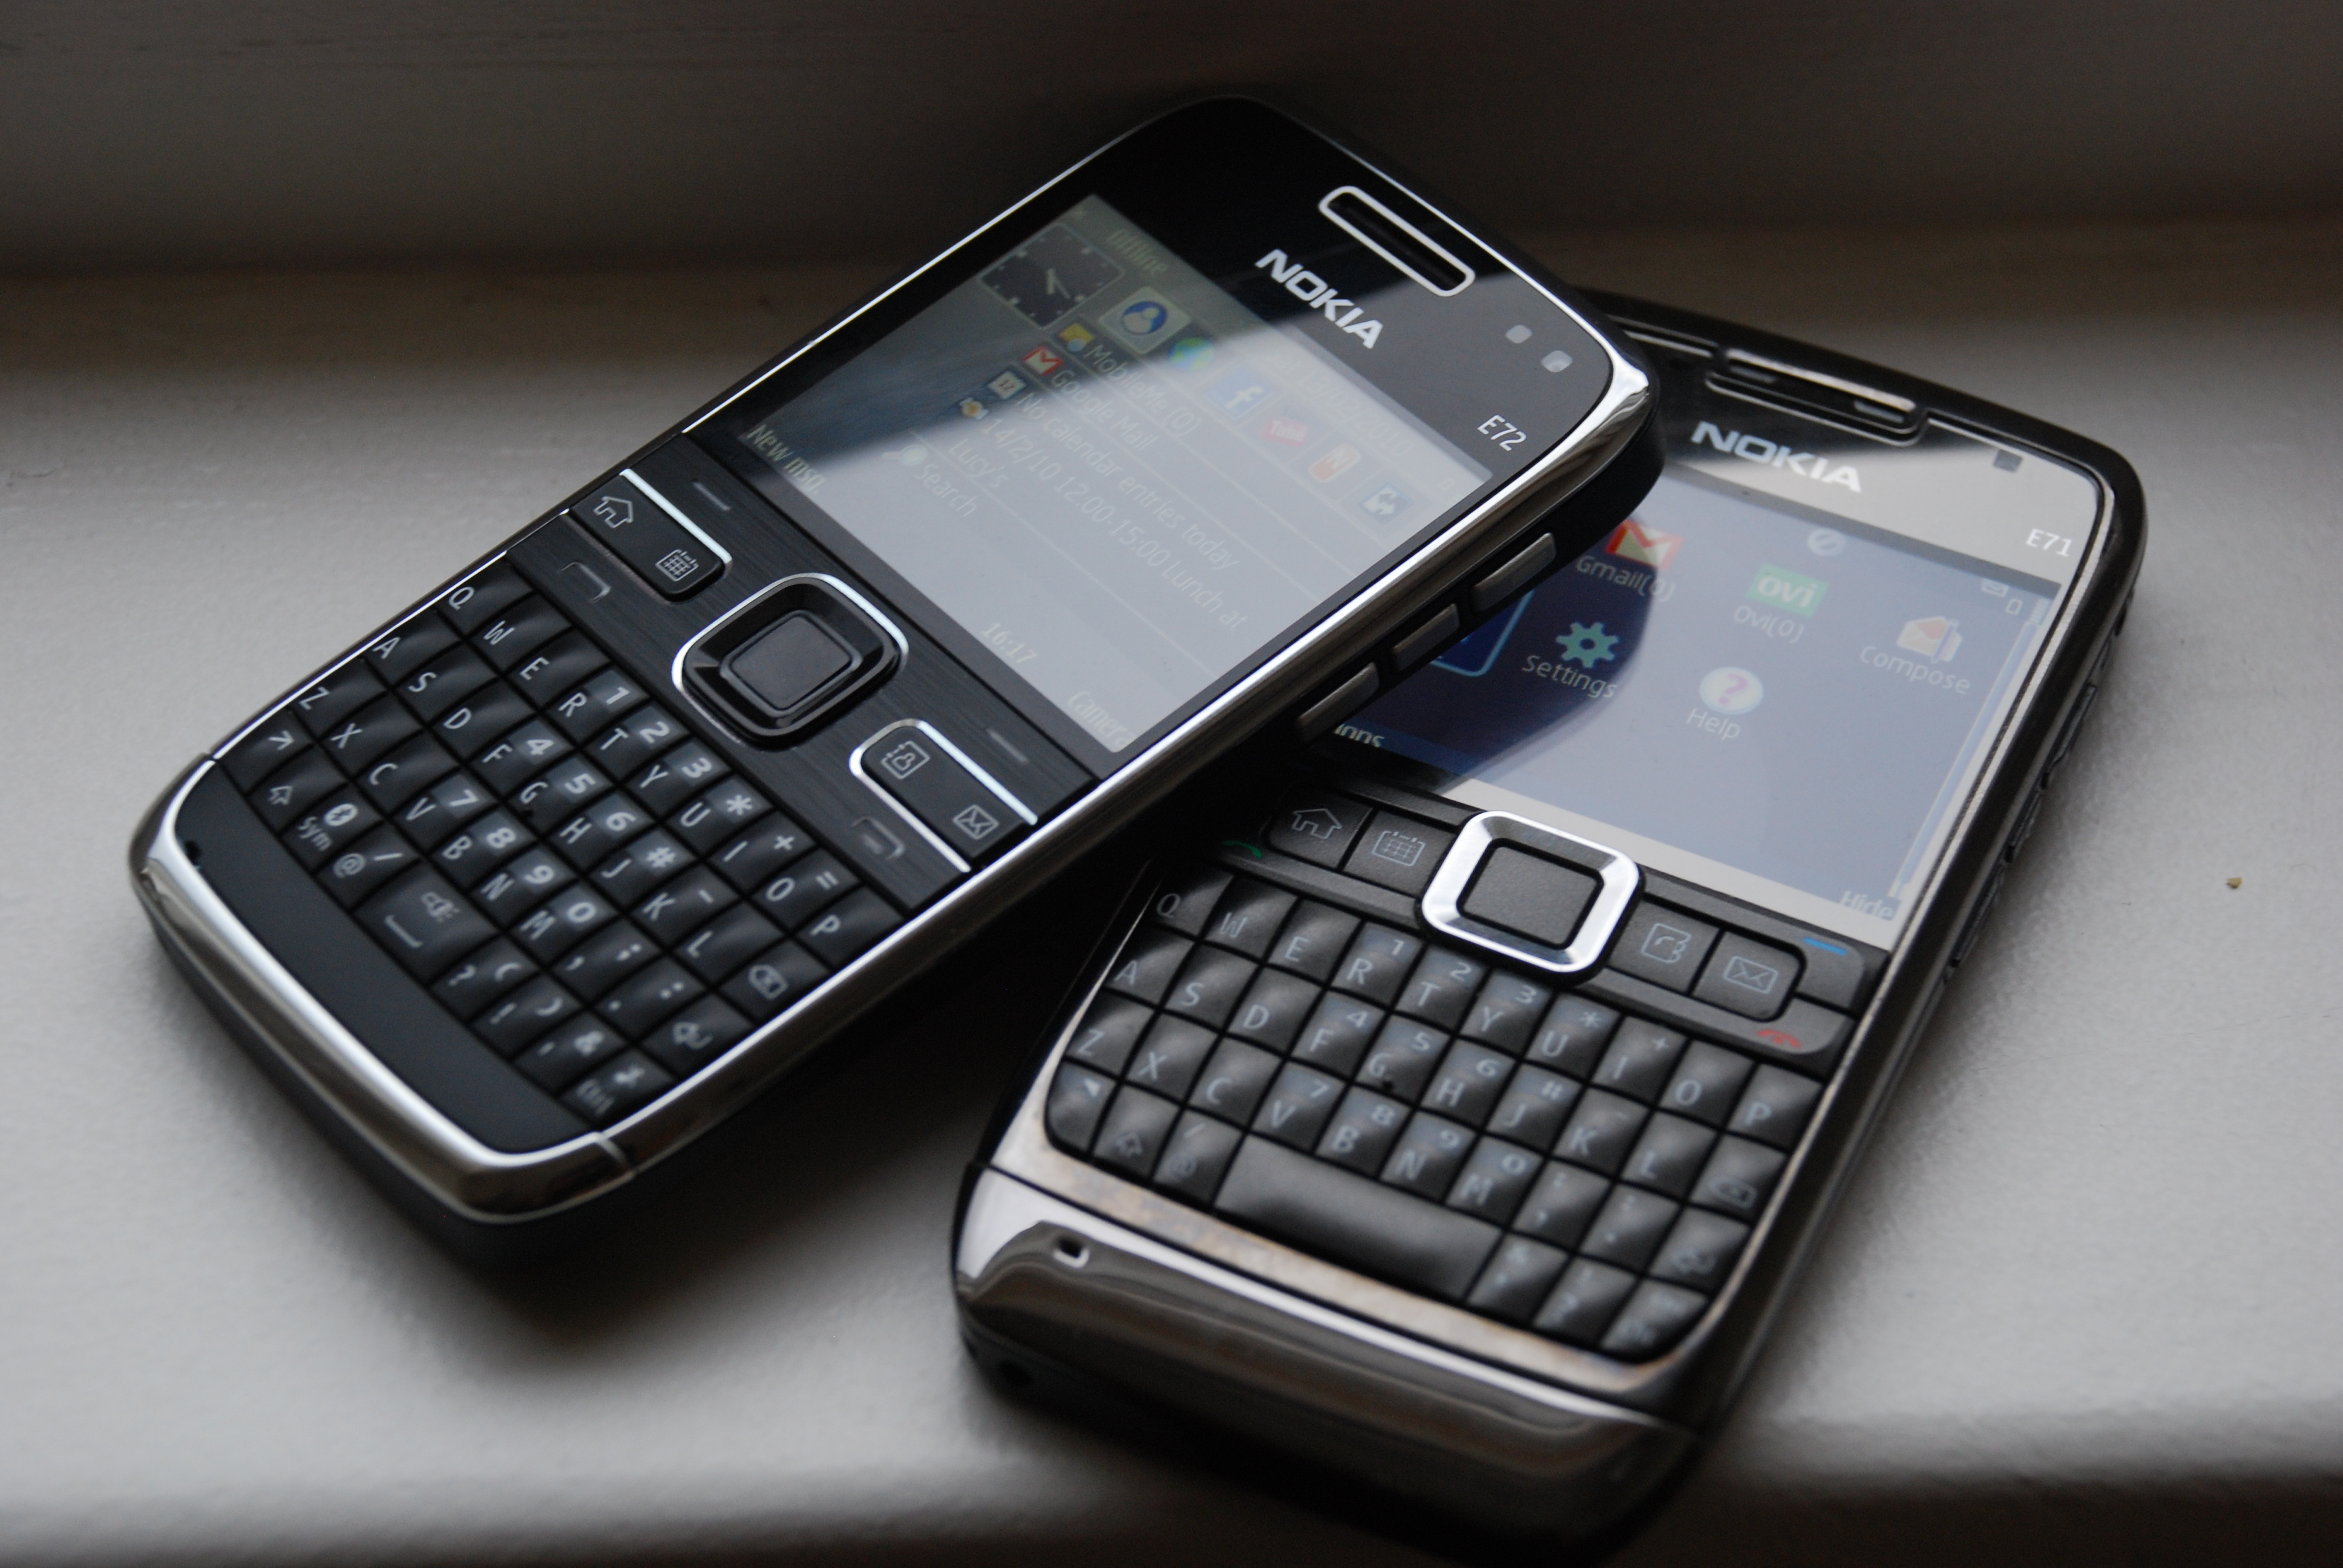 Những hình nền đẹp cho Nokia E72 sẽ khiến chiếc điện thoại của bạn trở nên nổi bật và độc đáo hơn bao giờ hết. Hãy khám phá những hình nền độc đáo và ấn tượng để trang trí cho chiếc Nokia E72 của bạn.